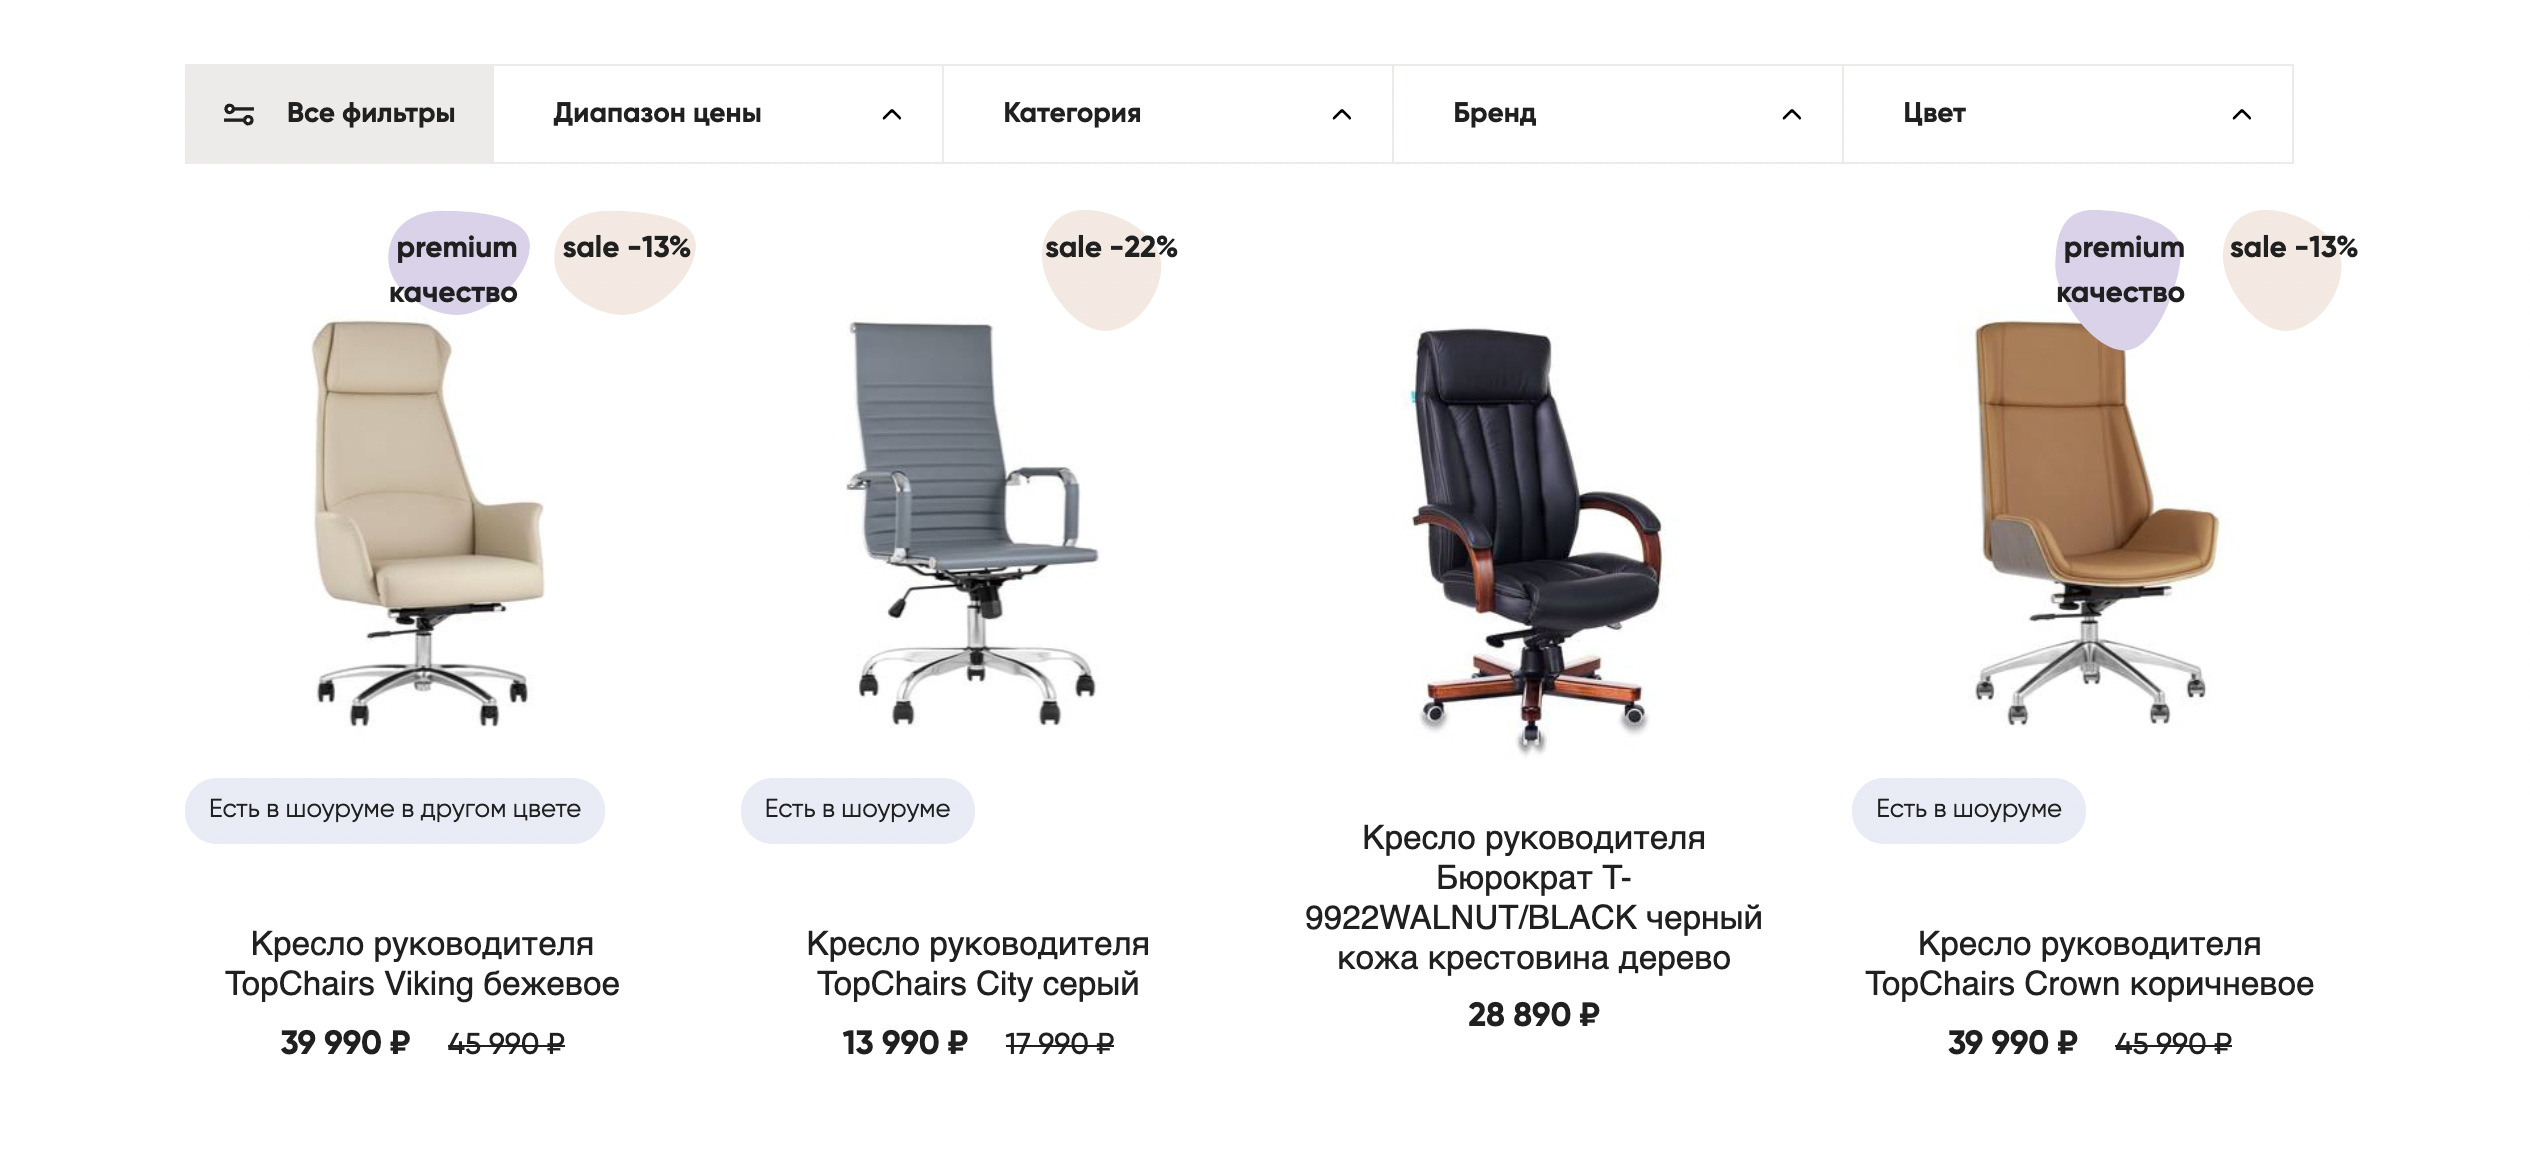 Интернет⁠-⁠магазин продает мебель онлайн. Источник: stoolgroup.ru